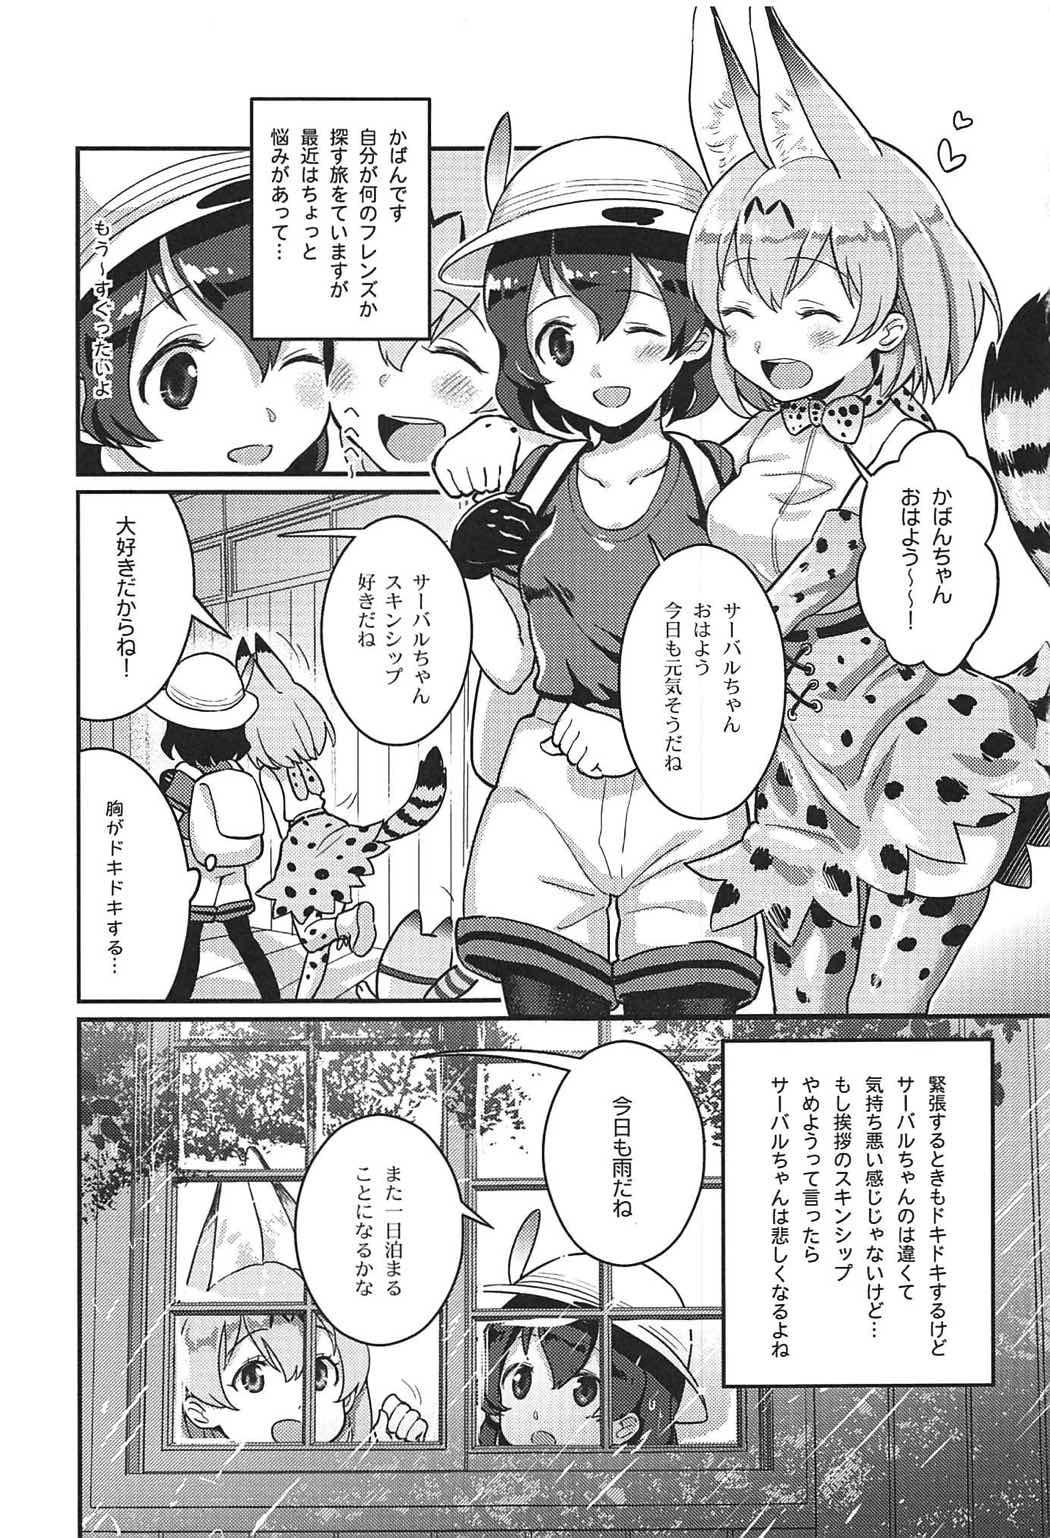 Farting Daisuki ni Kimatteru!! - Kemono friends Hidden Camera - Page 2